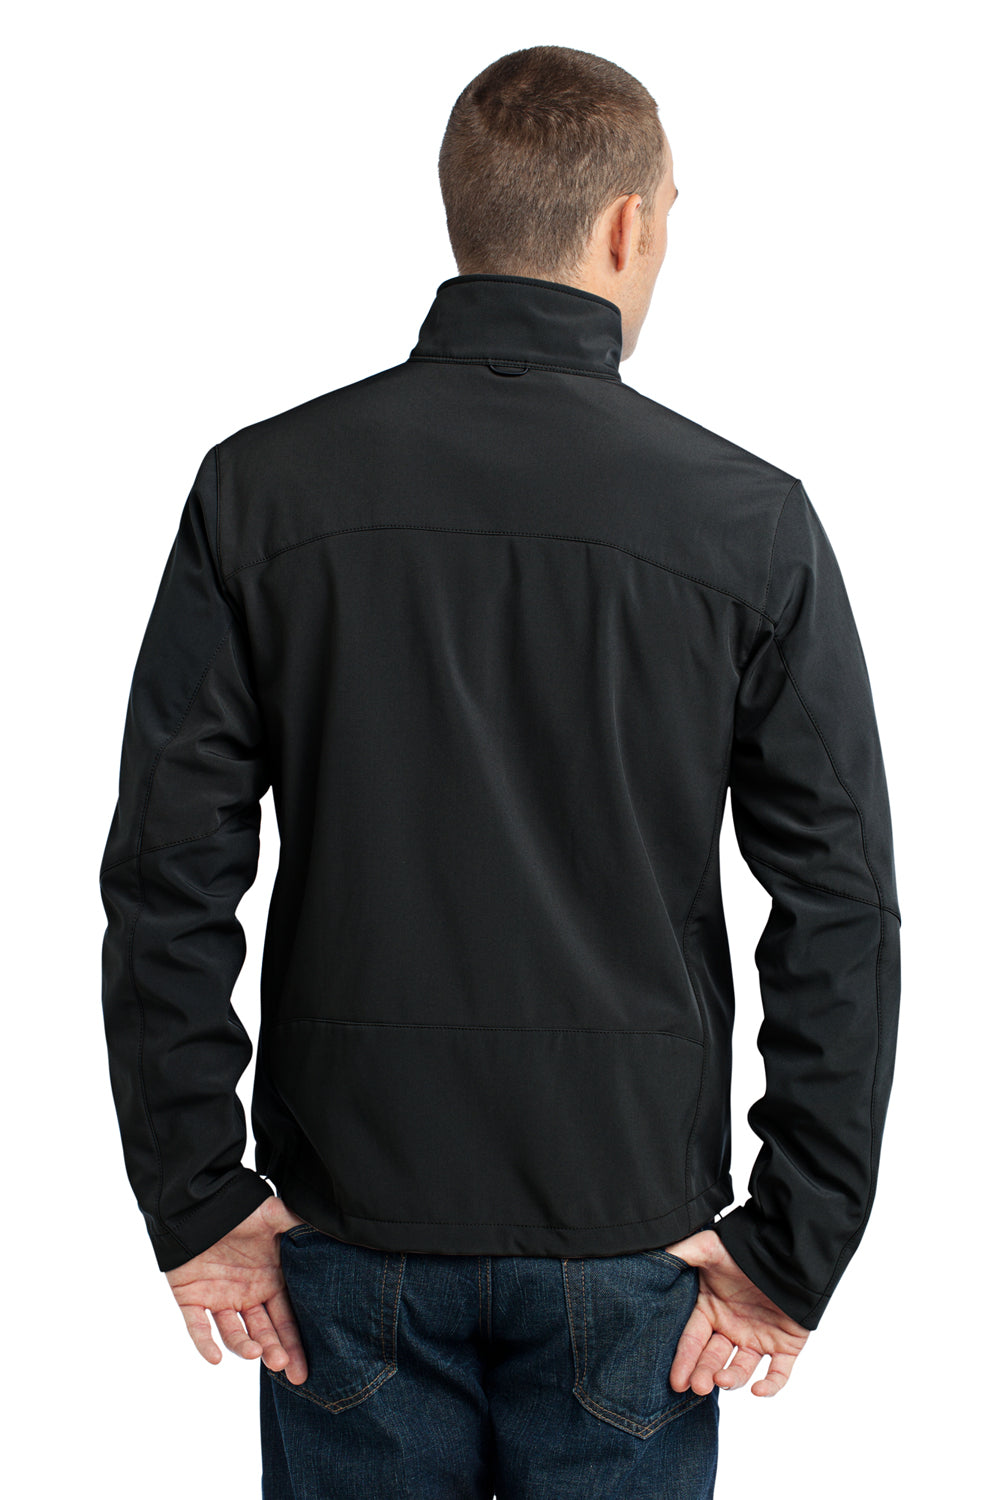 Eddie Bauer EB530 Mens Water Resistant Full Zip Jacket Black Model Back